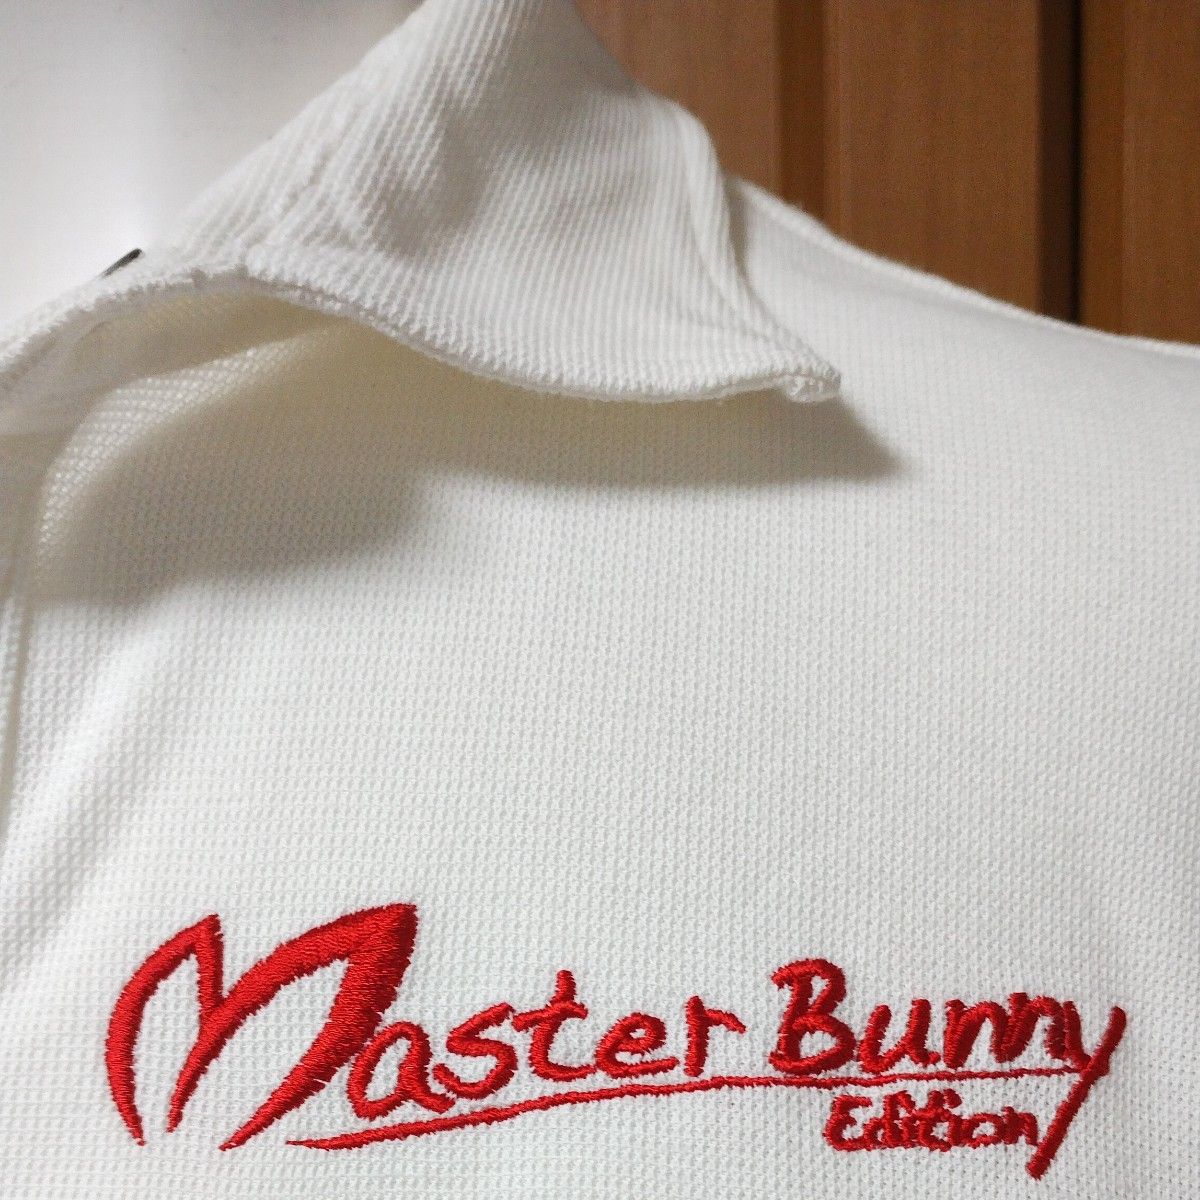 マスターバニーエディション半袖ポロシャツ4　実寸S-M　白黒切替　Master Bunny Edition　パーリーゲイツ　ゴルフ